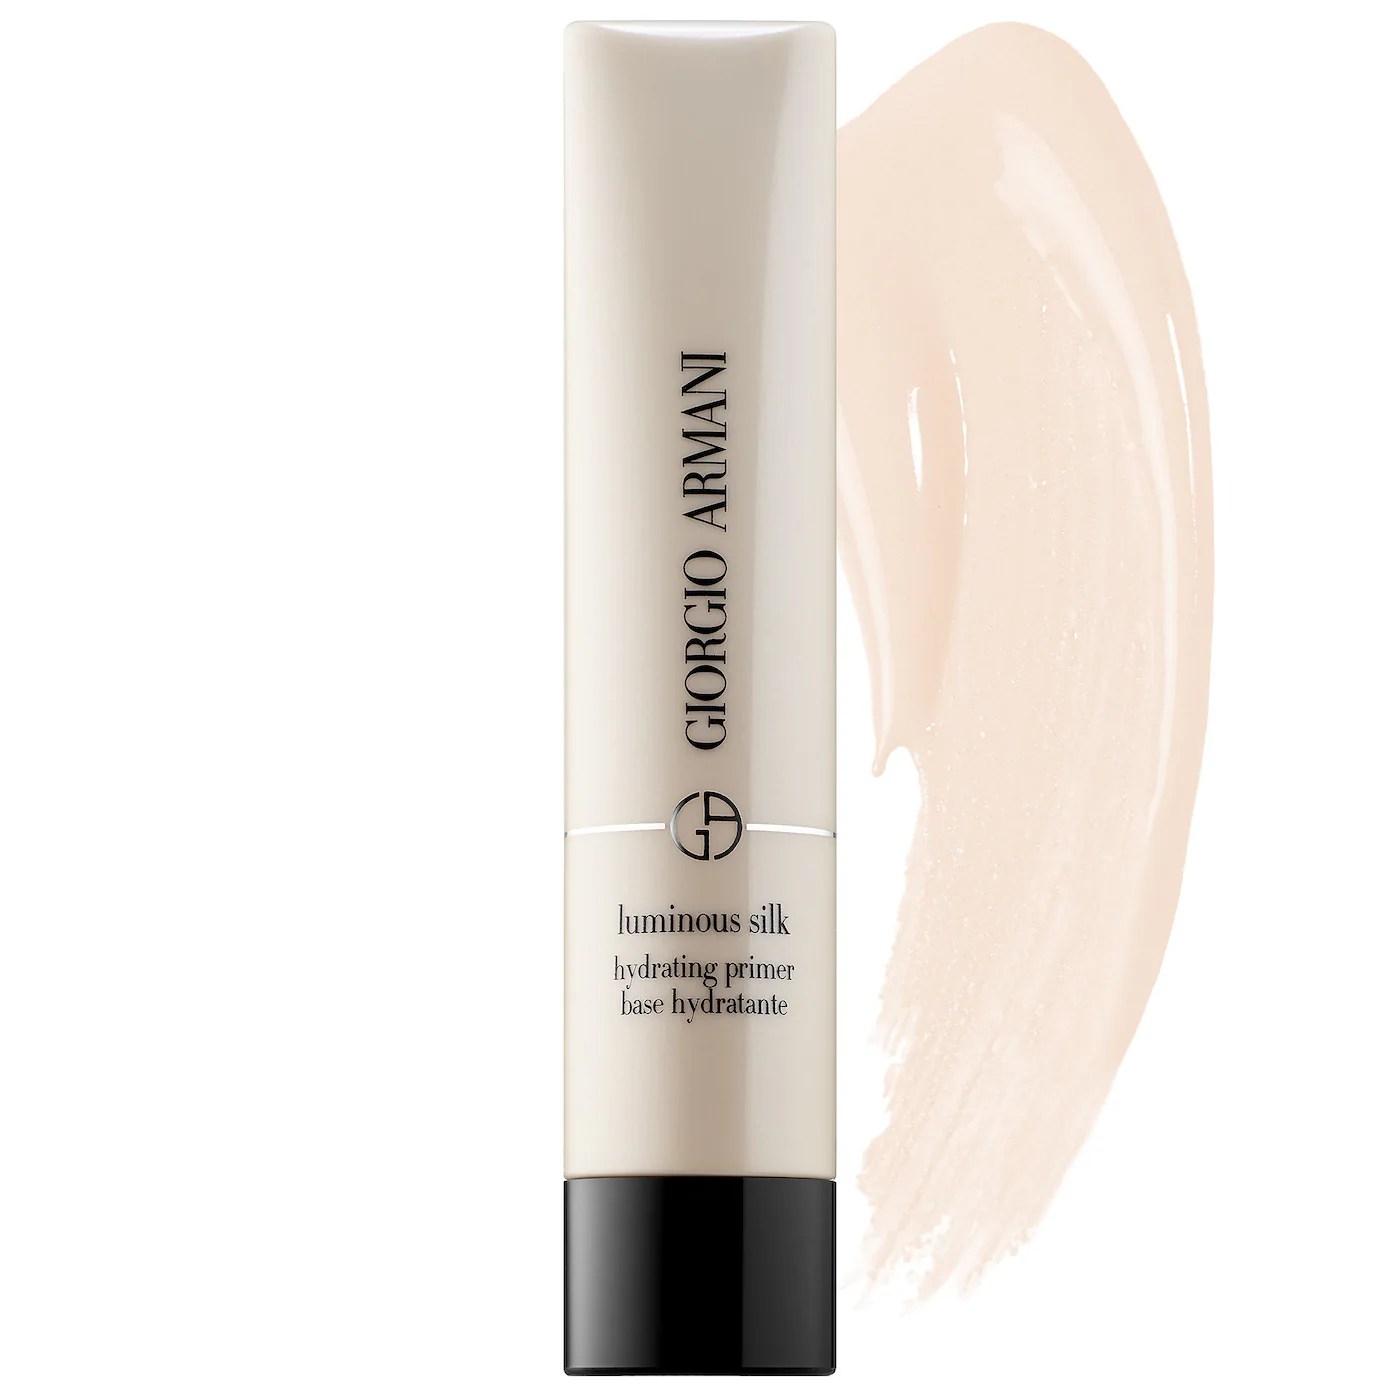 armani beauty luminous silk hydrating makeup primer